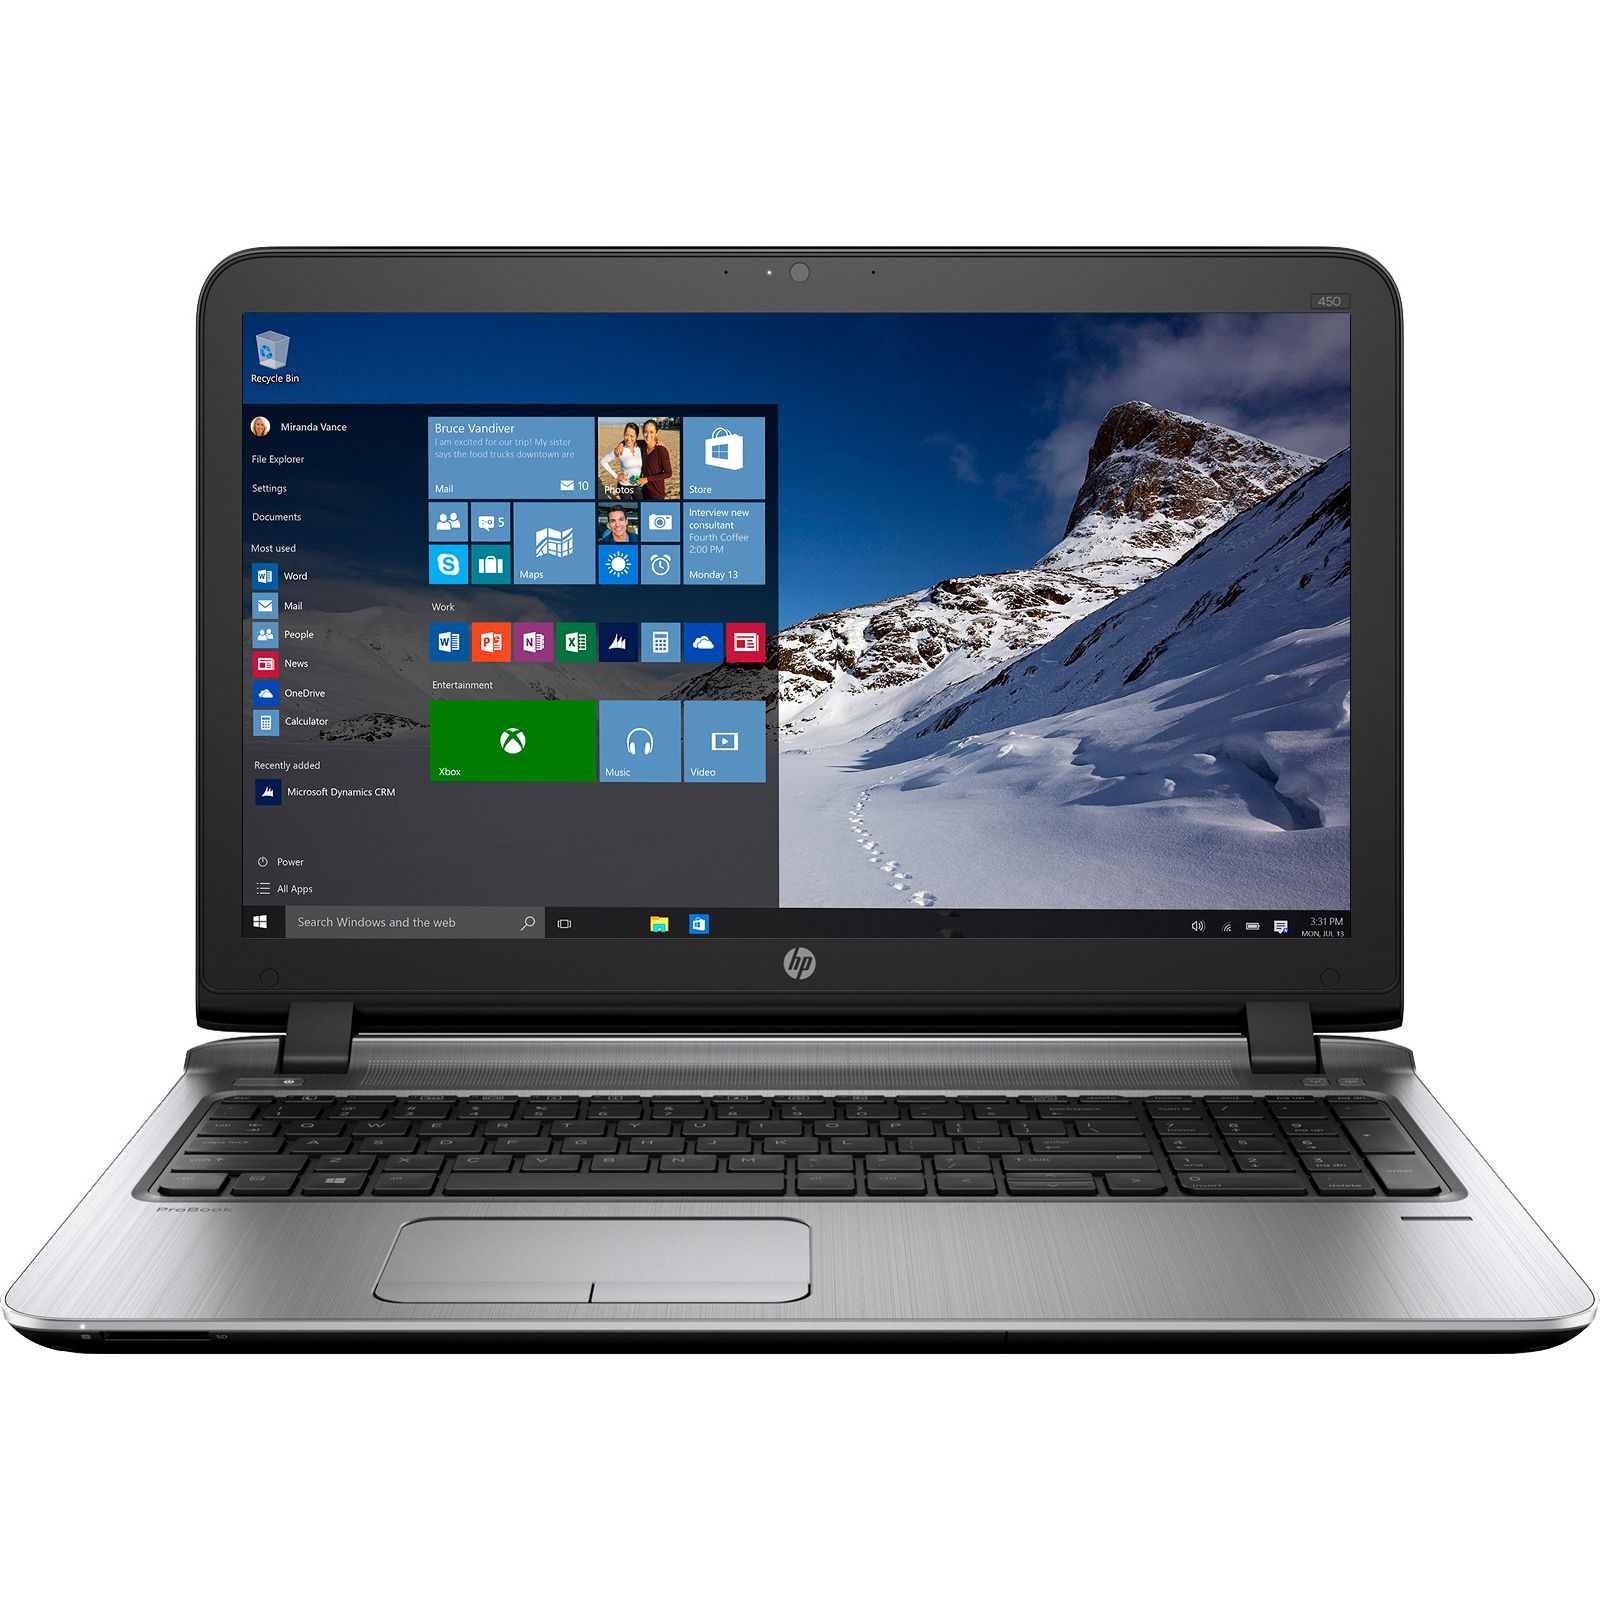 Laptop HP Probook 450 G3, Intel Core i3-6100U, 4GB DDR4, HDD 500GB, Intel HD Graphics, Windows 10 Pro